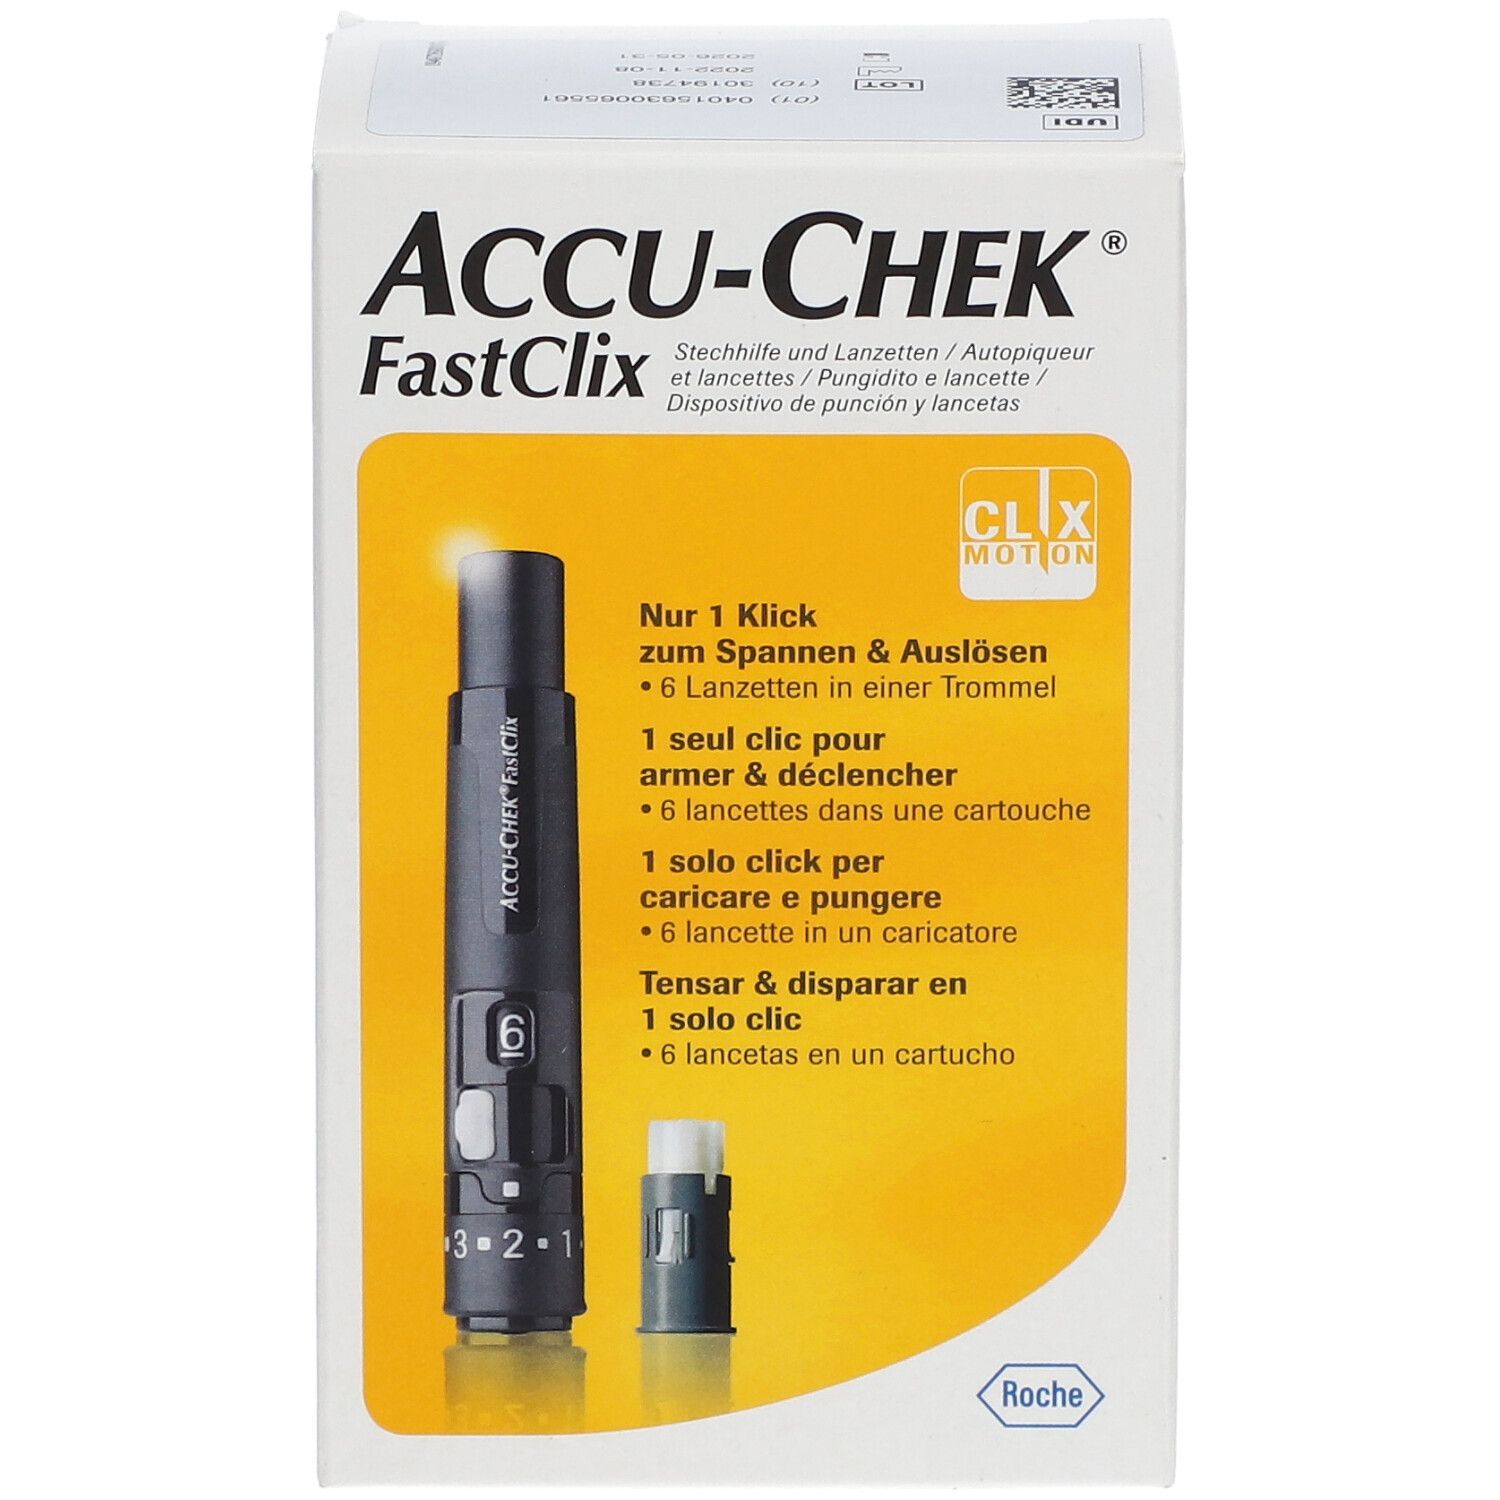 ACCU-CHEK® FastClix AutoPiqueur + Cartouche de 6 Lancettes